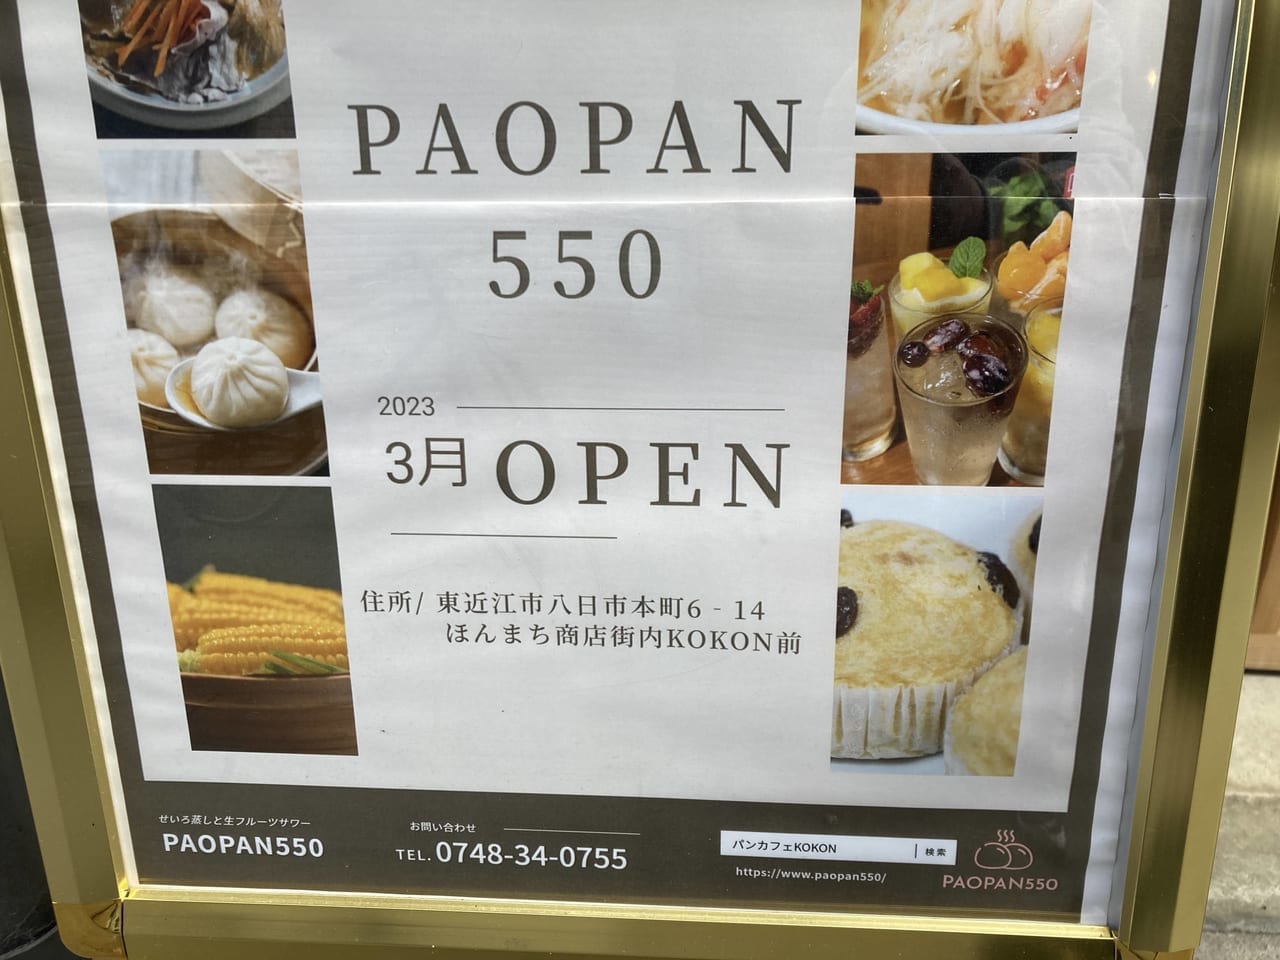 PAOPAN550、3月オープン予定2